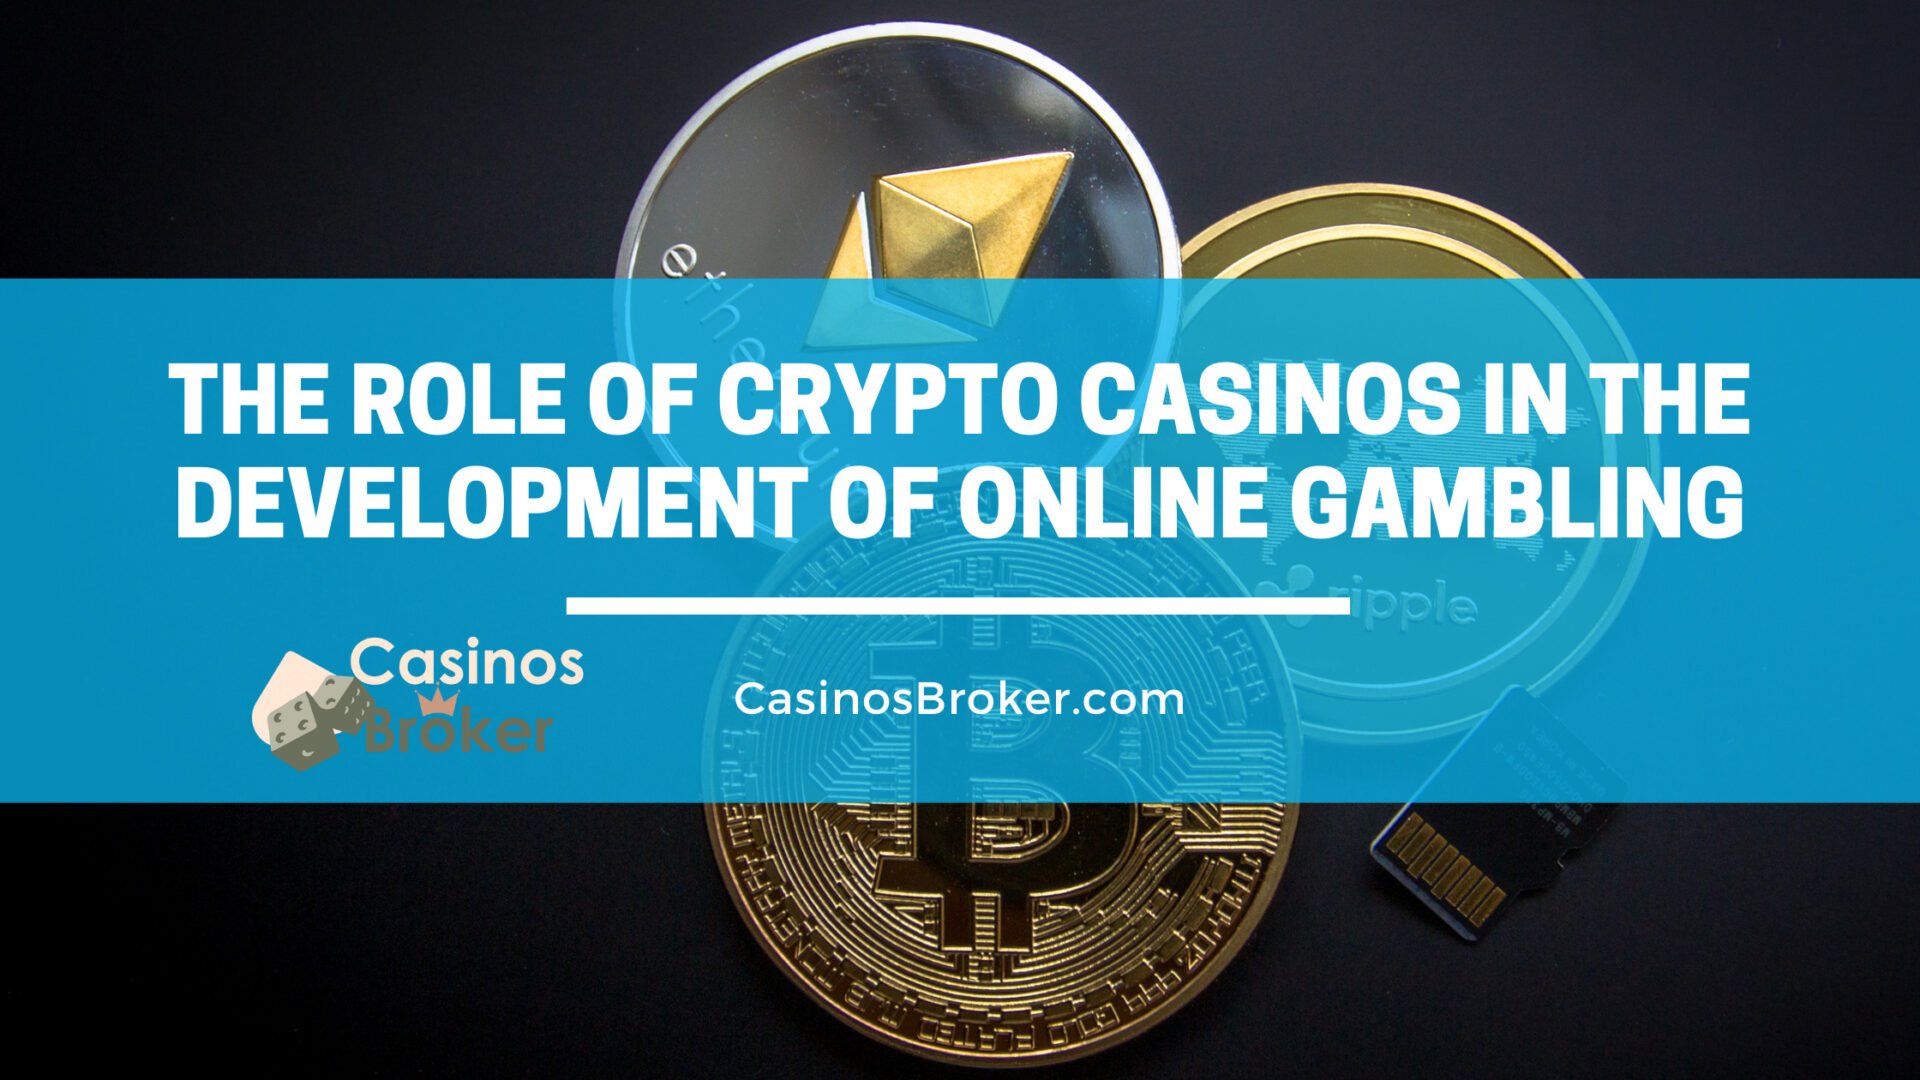 Le rôle des crypto-casinos dans le développement des jeux d'argent en ligne.